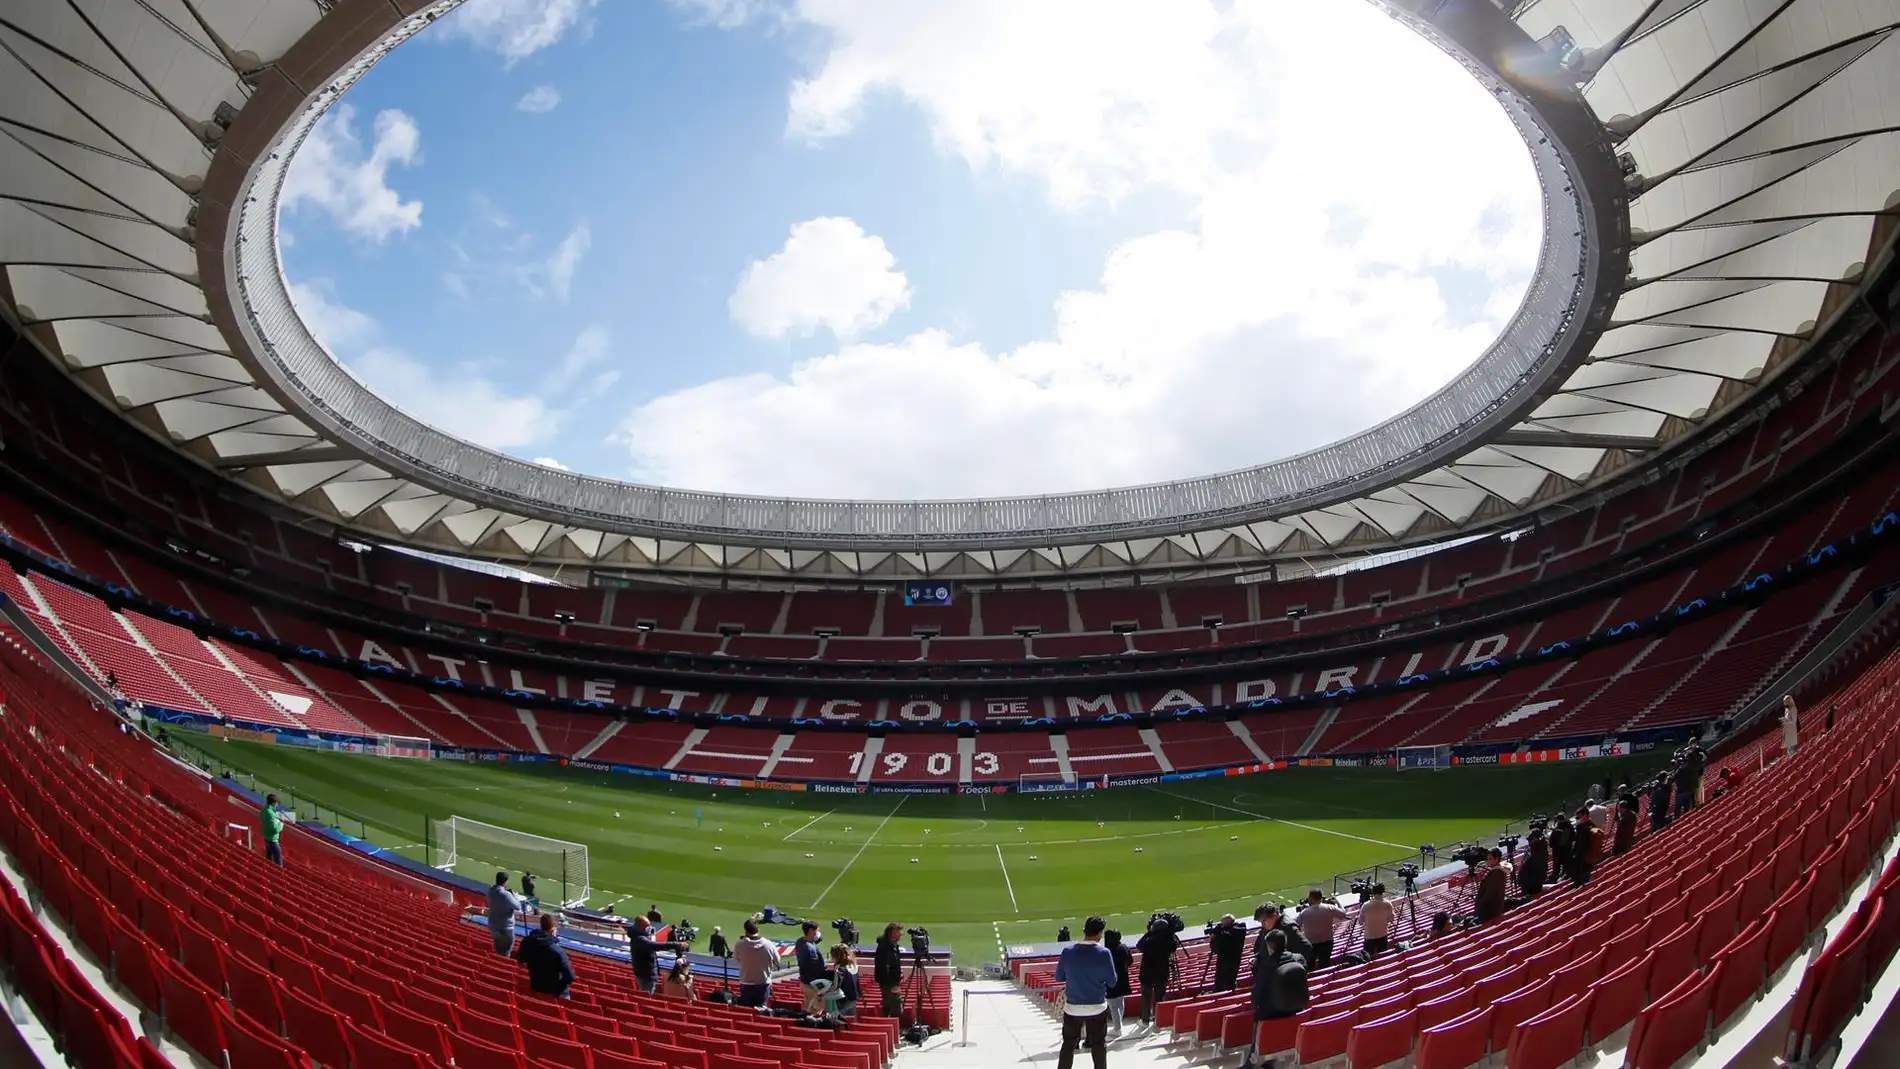 El estadio del Atlético de Madrid cambia de nombre: así se llama a partir de ahora el Metropolitano